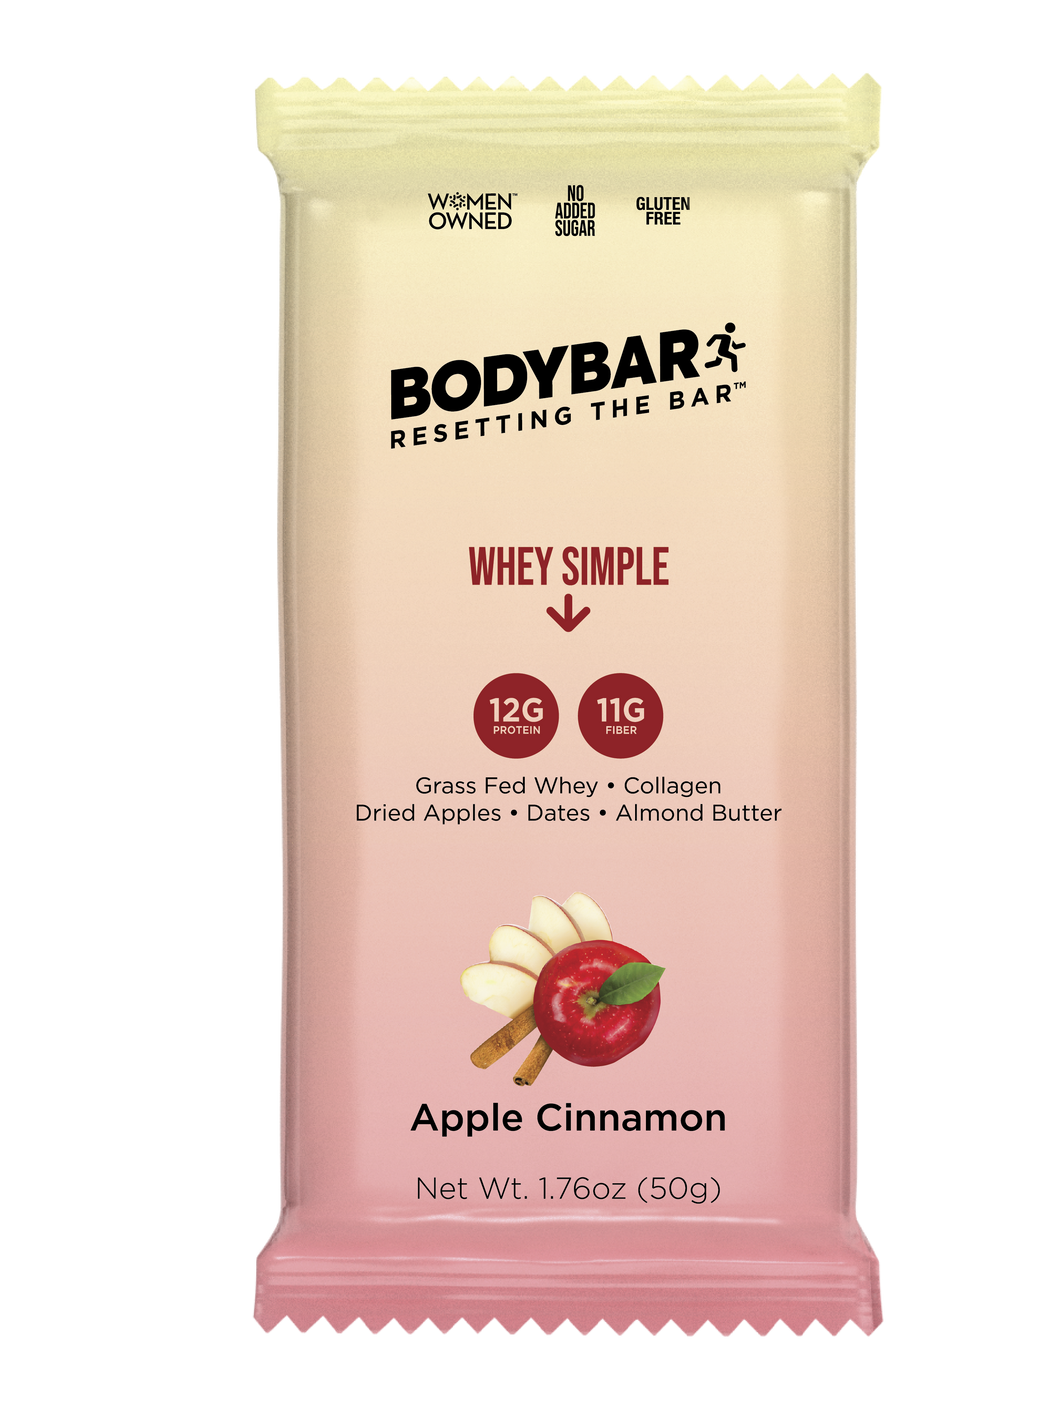 Apple Cinnamon     10 Bars  $3.00/bar